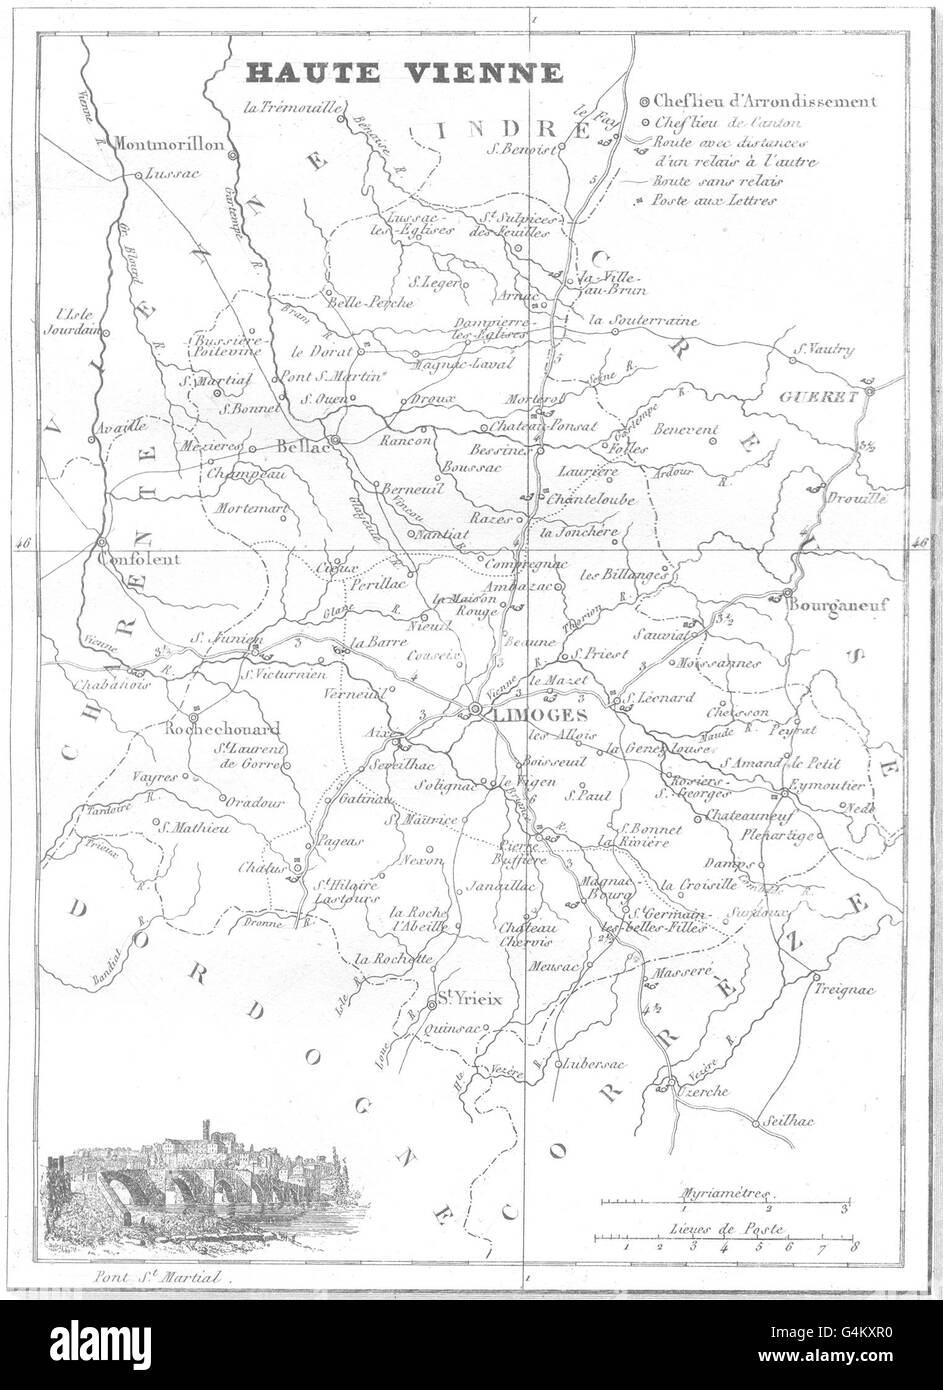 Mappa di haute vienne Foto e Immagini Stock in Bianco e Nero - Alamy